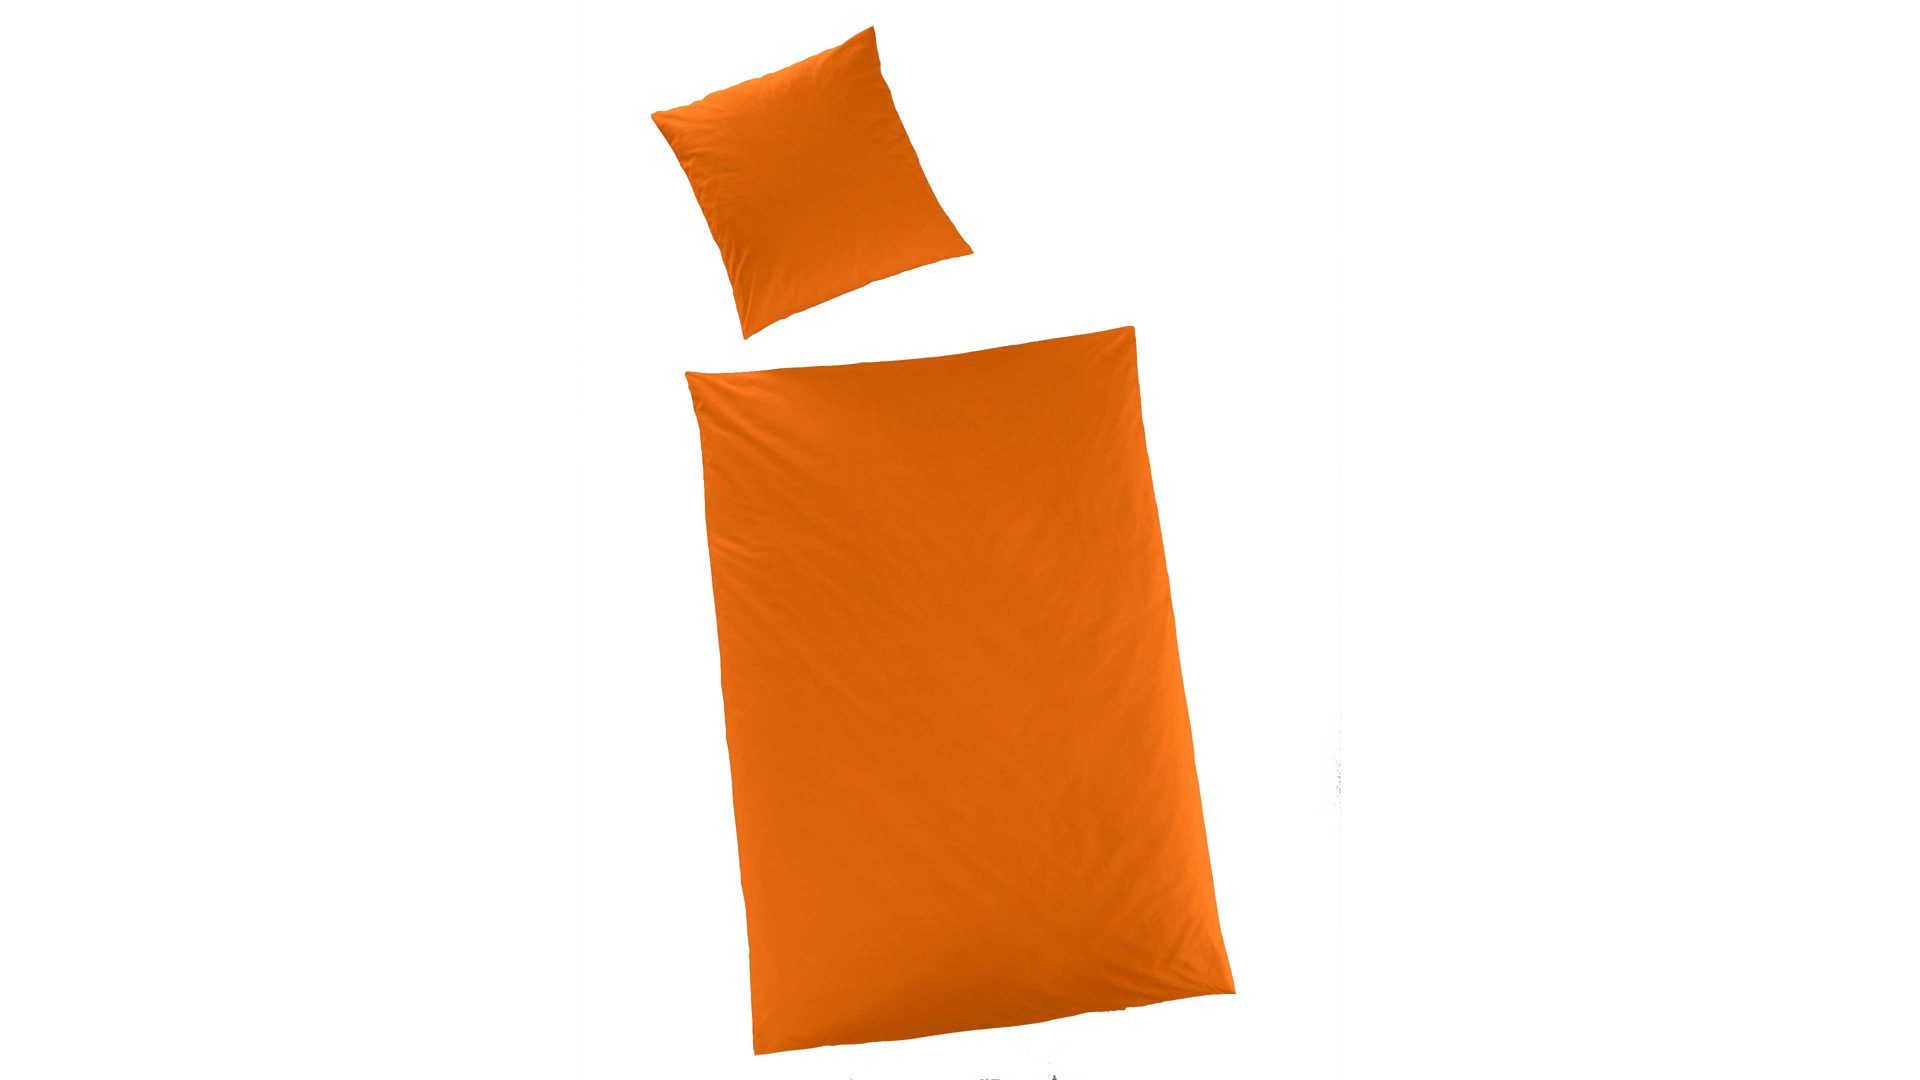 Bettwäsche-Set H.g. hahn haustextilien aus Stoff in Orange HAHN Luxus-Satin-Bettwäsche Sempre orangefarbener Baumwollsatin - zweiteilig, ca. 155 x 200 cm